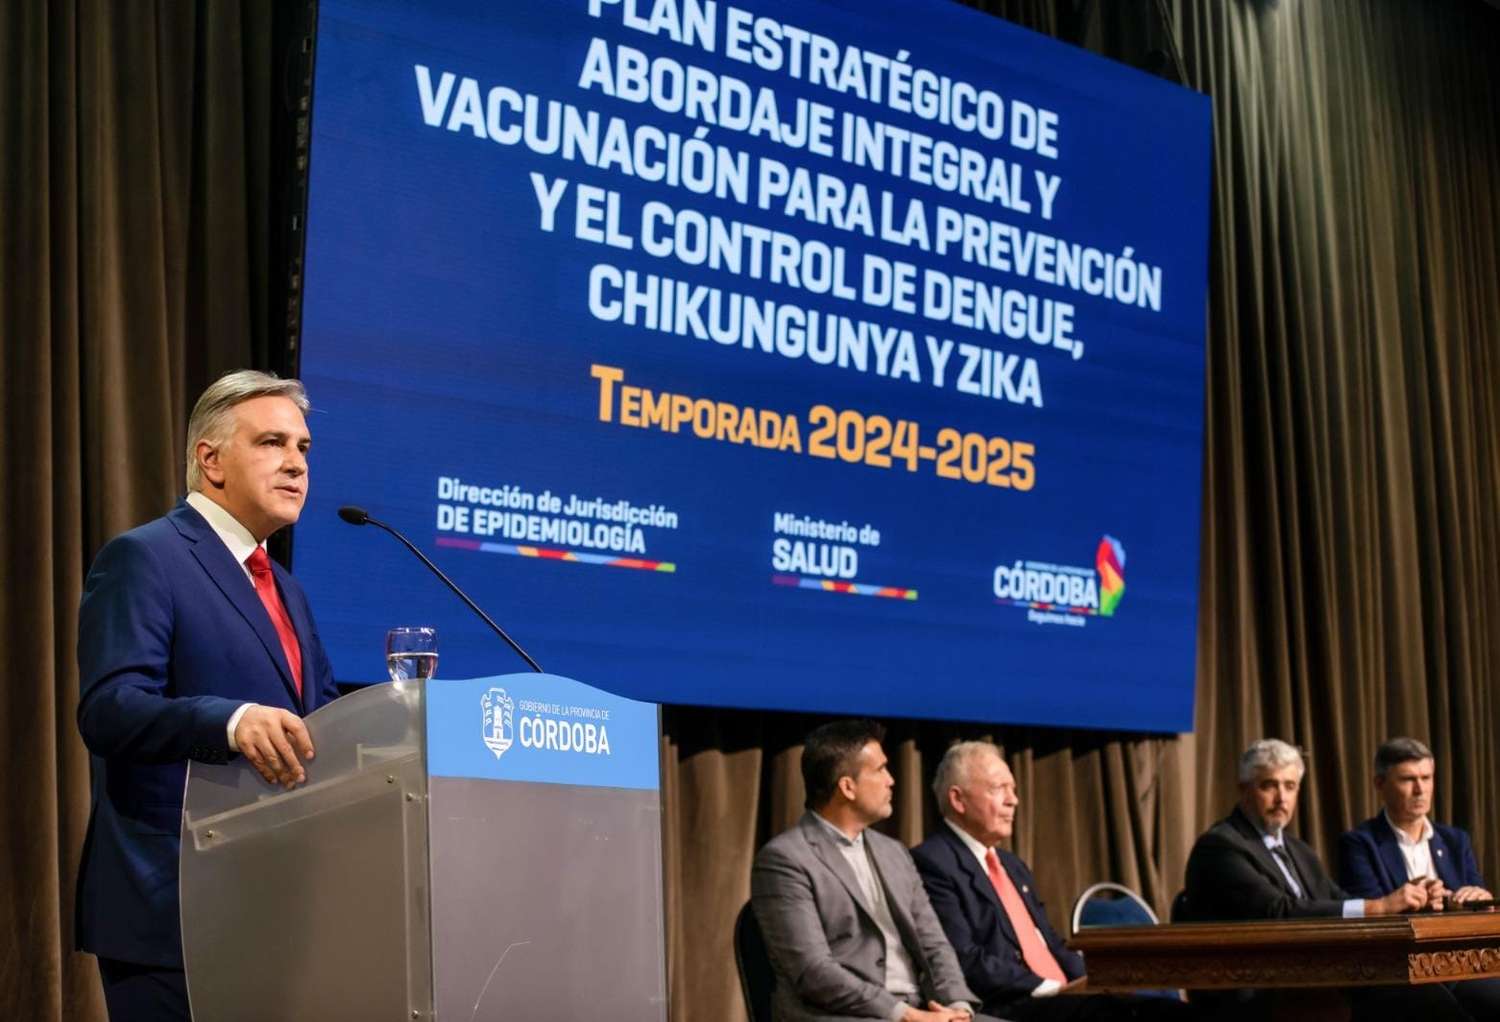 Córdoba lanzó el Plan Estratégico de Abordaje Integral y Vacunación contra el dengue, chikungunya y zika